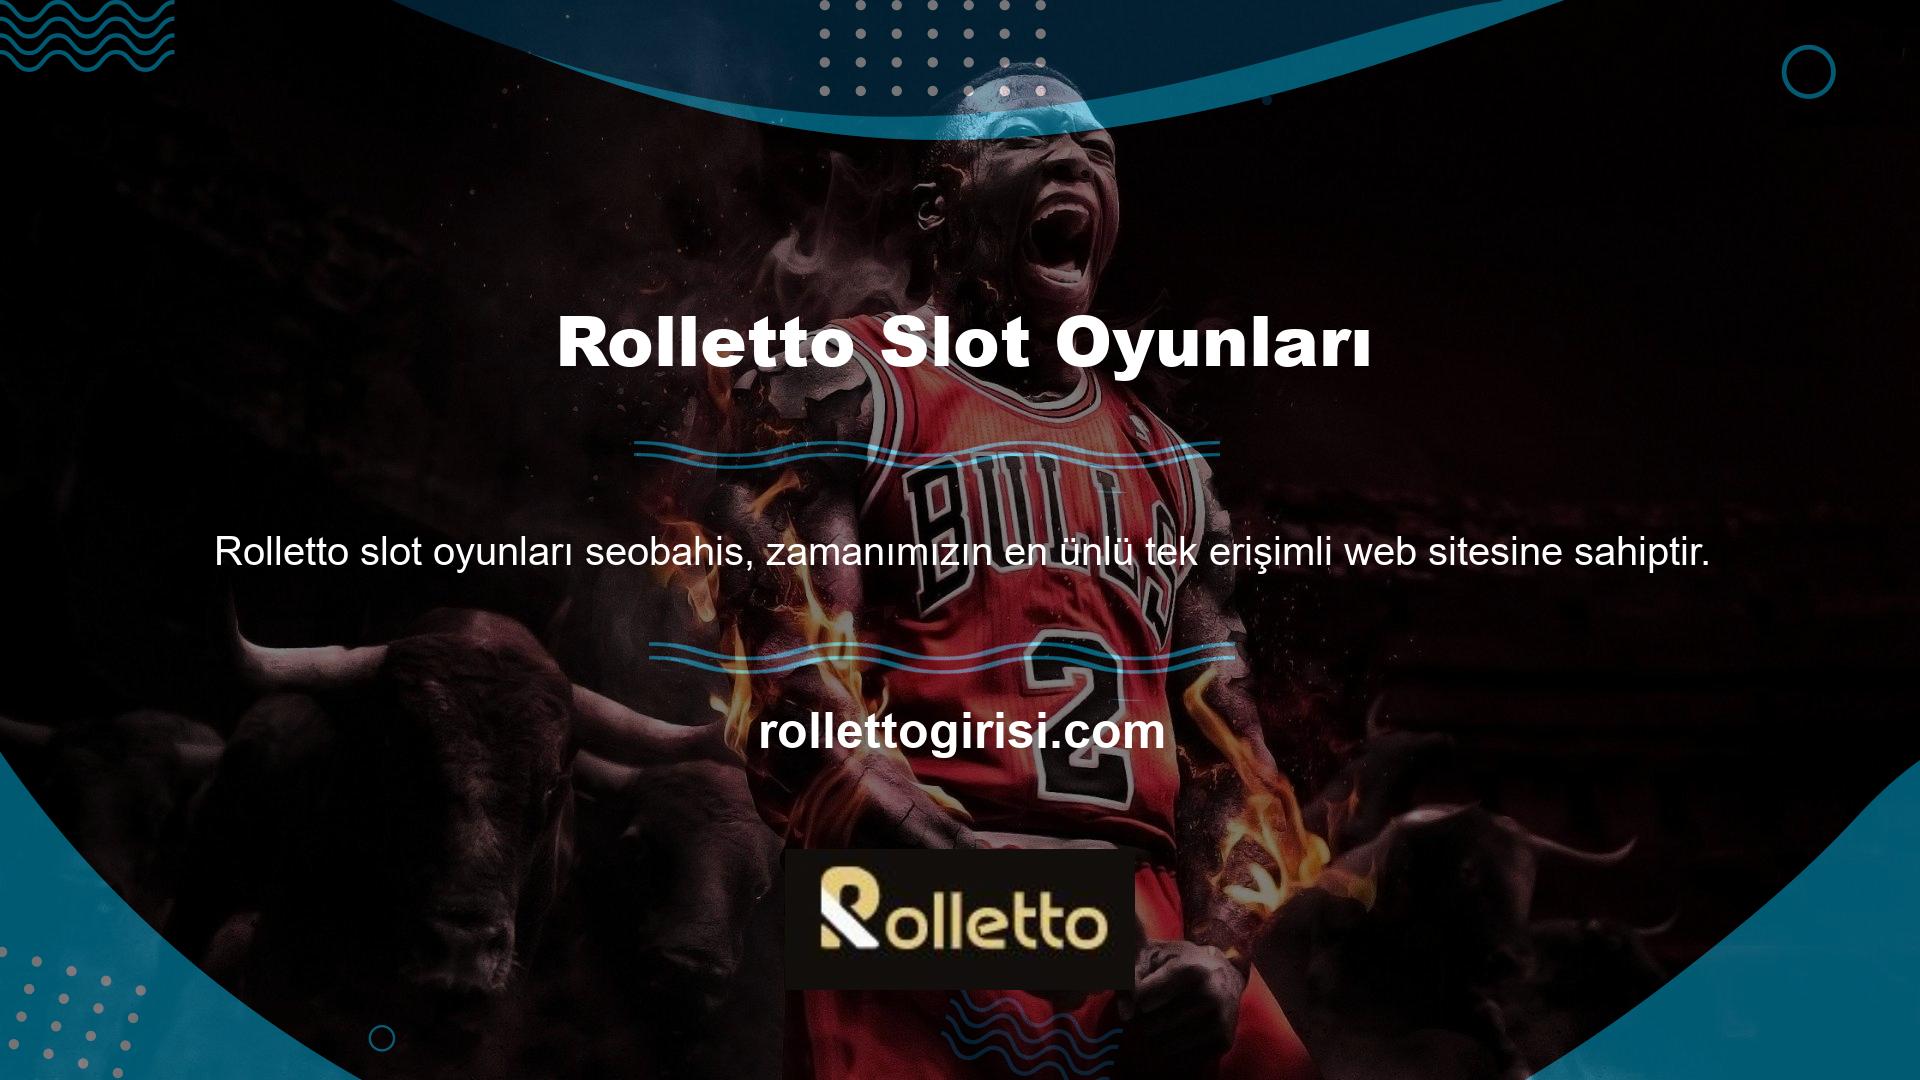 Rolletto, köklü bir markaya sahip en ünlü yabancı bahis sitelerinden biridir